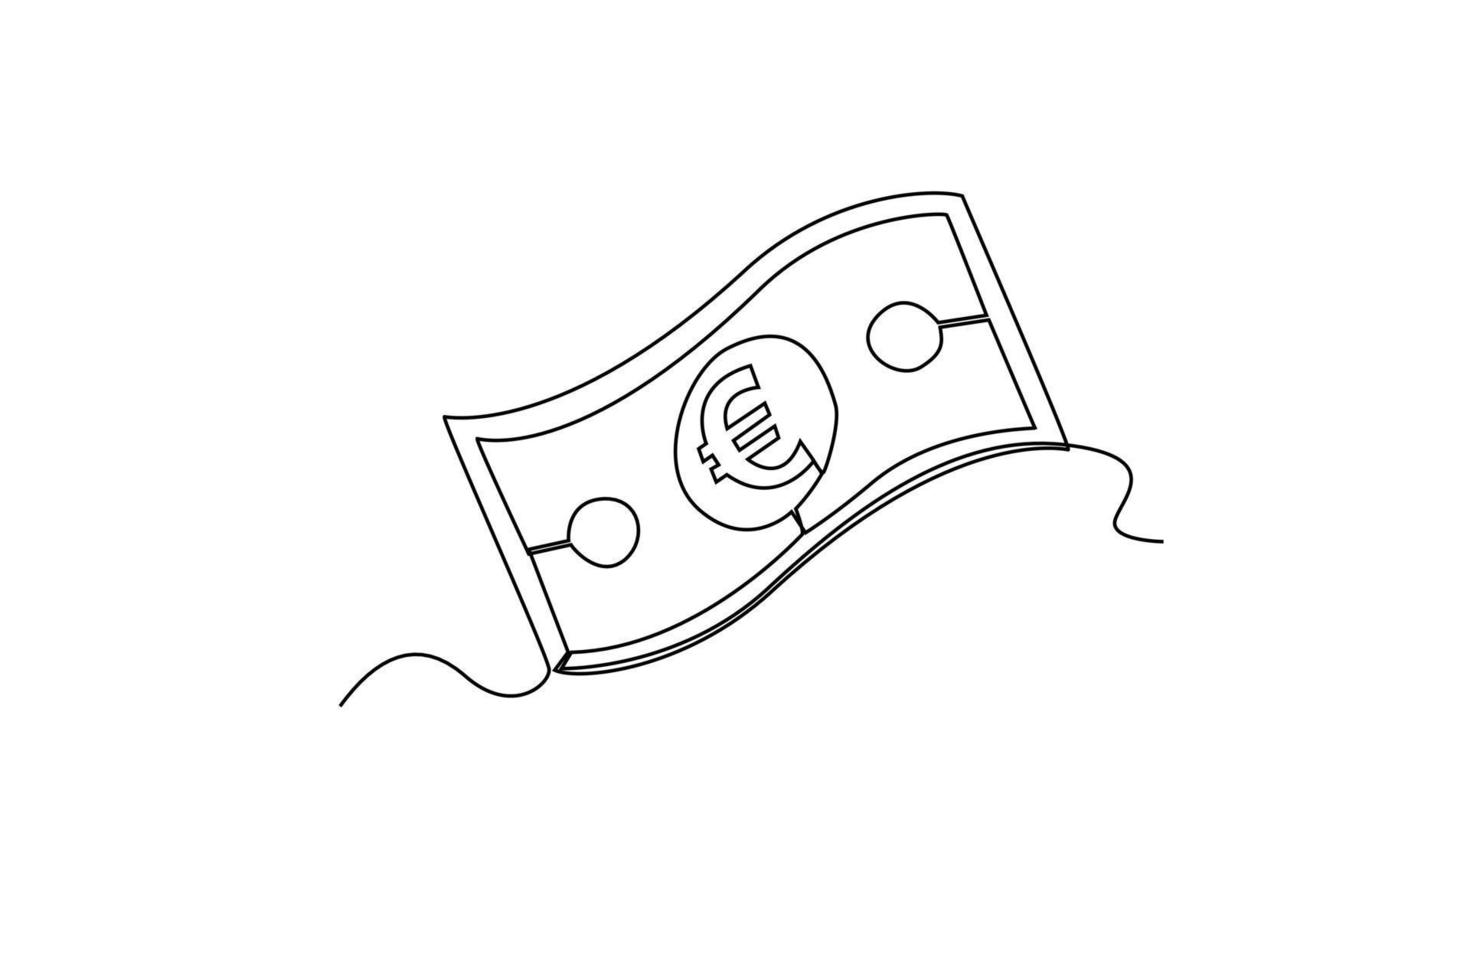 kontinuierlich eine Linie Zeichnung Euro Währung Papier. Land Währung Konzept. Single Linie Zeichnung Design Grafik Vektor Illustration